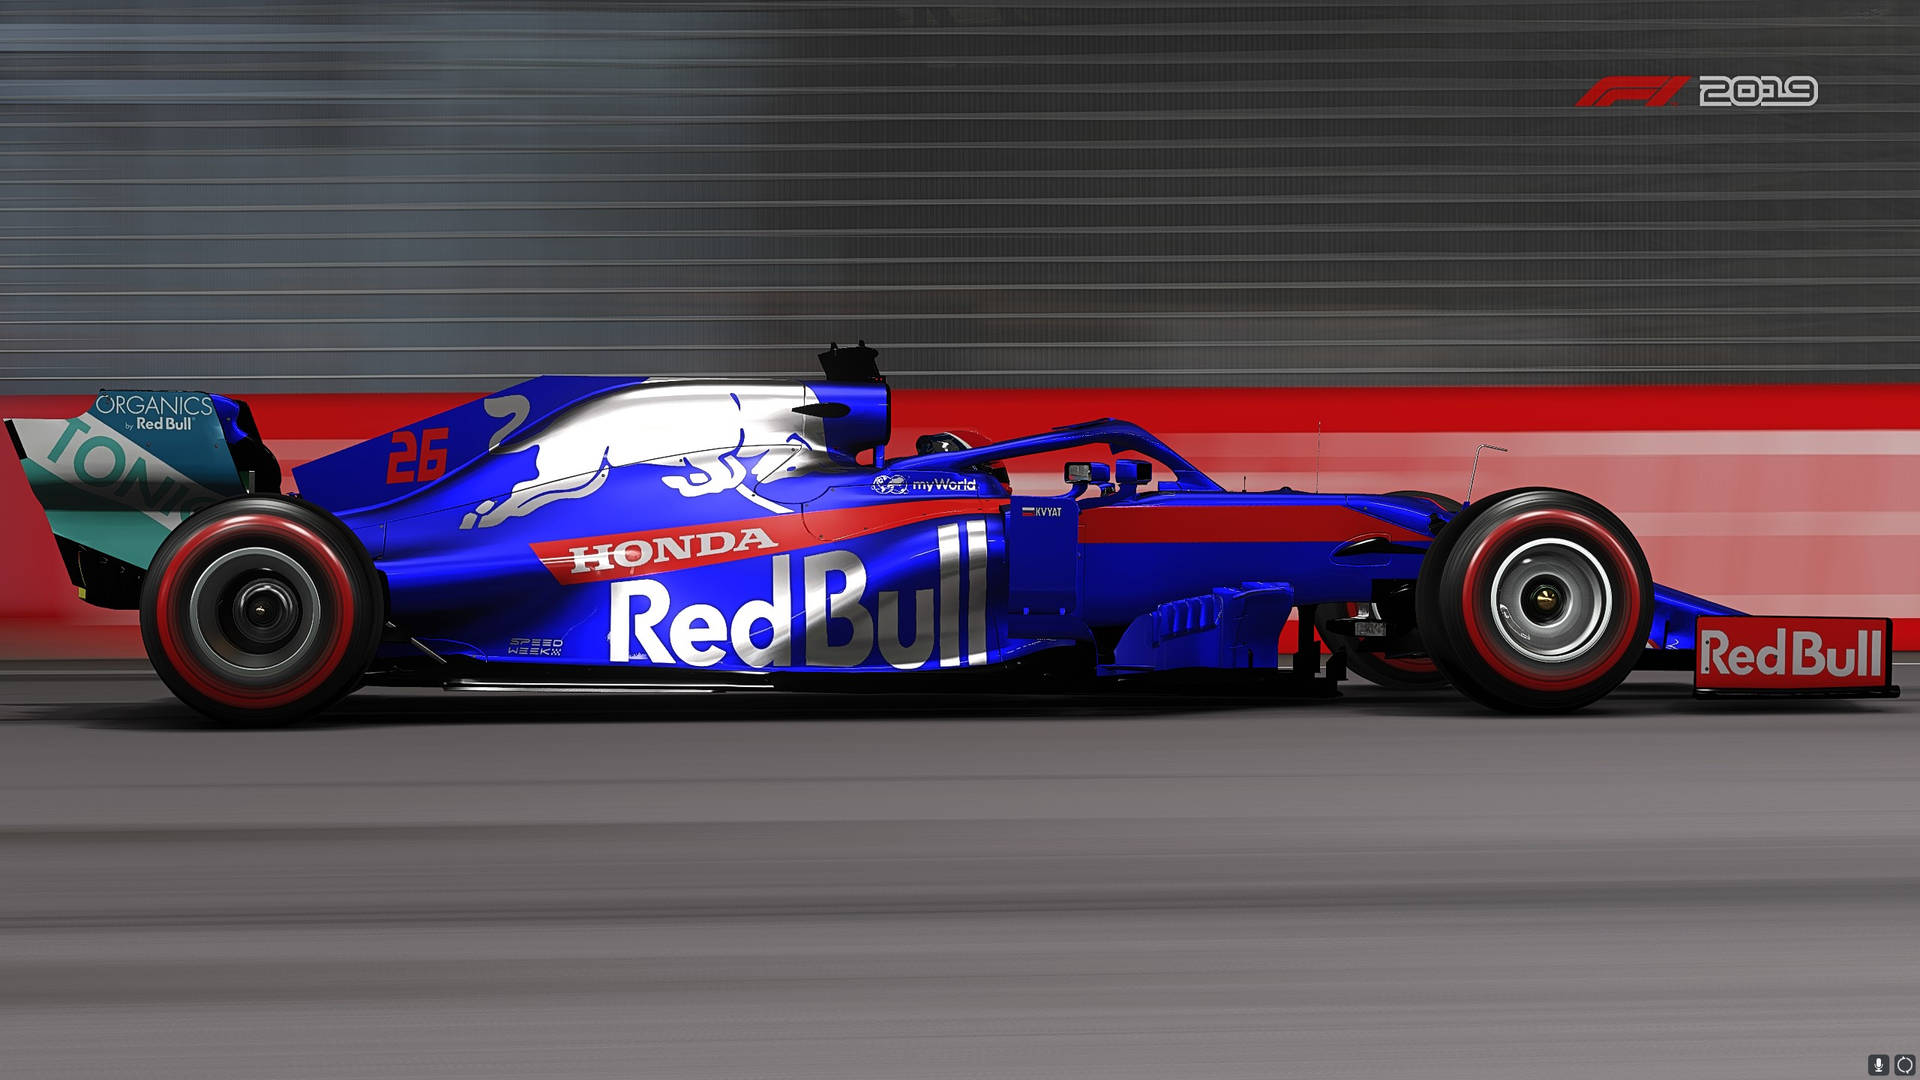 Kvyat's #26 Car In F1 2019